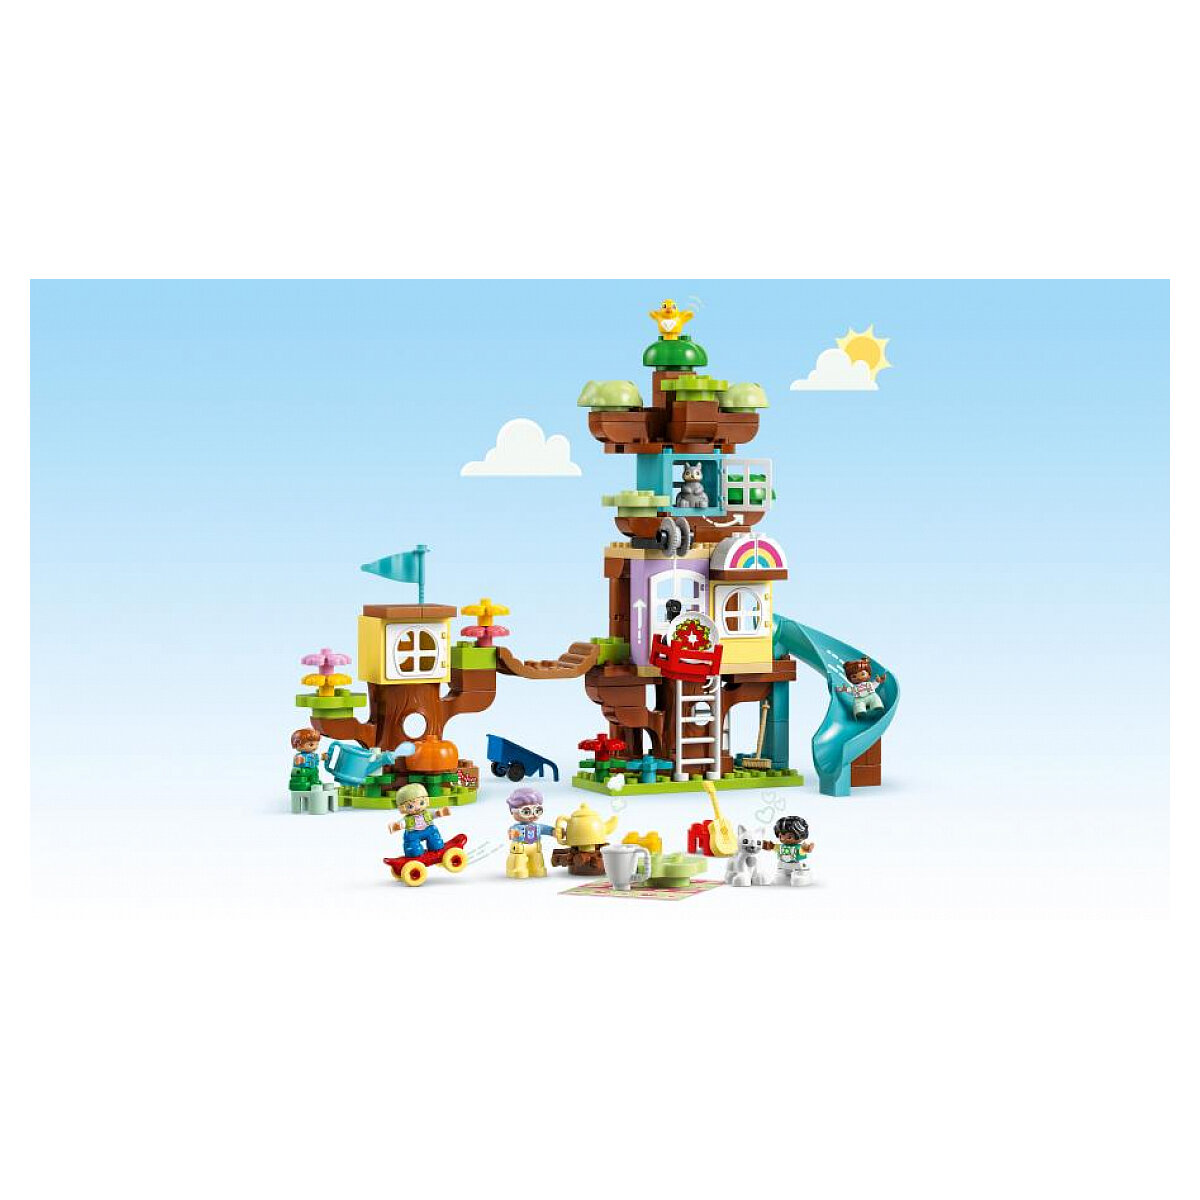 Lego Duplo La Cabane Dans L'arbre 3-en-1 - 10993